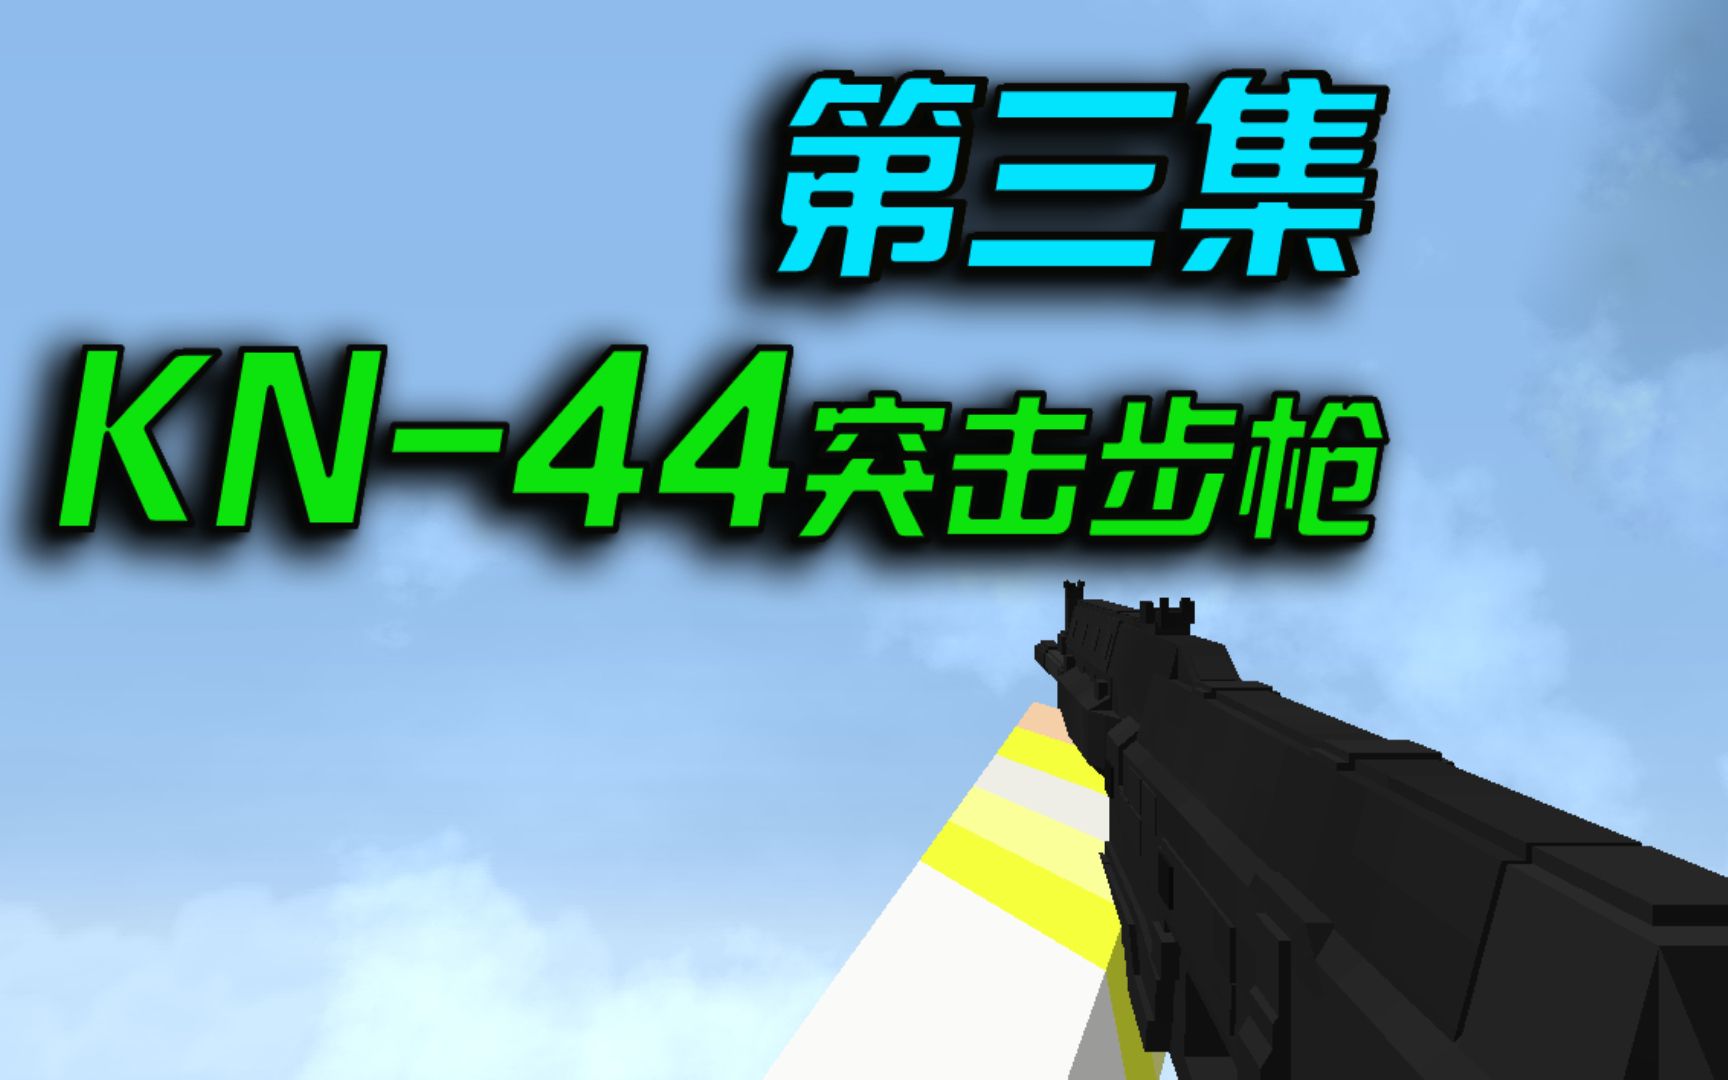 【我的世界幻梦】异界战争模组生存#3：KN-44突击步枪登场！无敌套装！